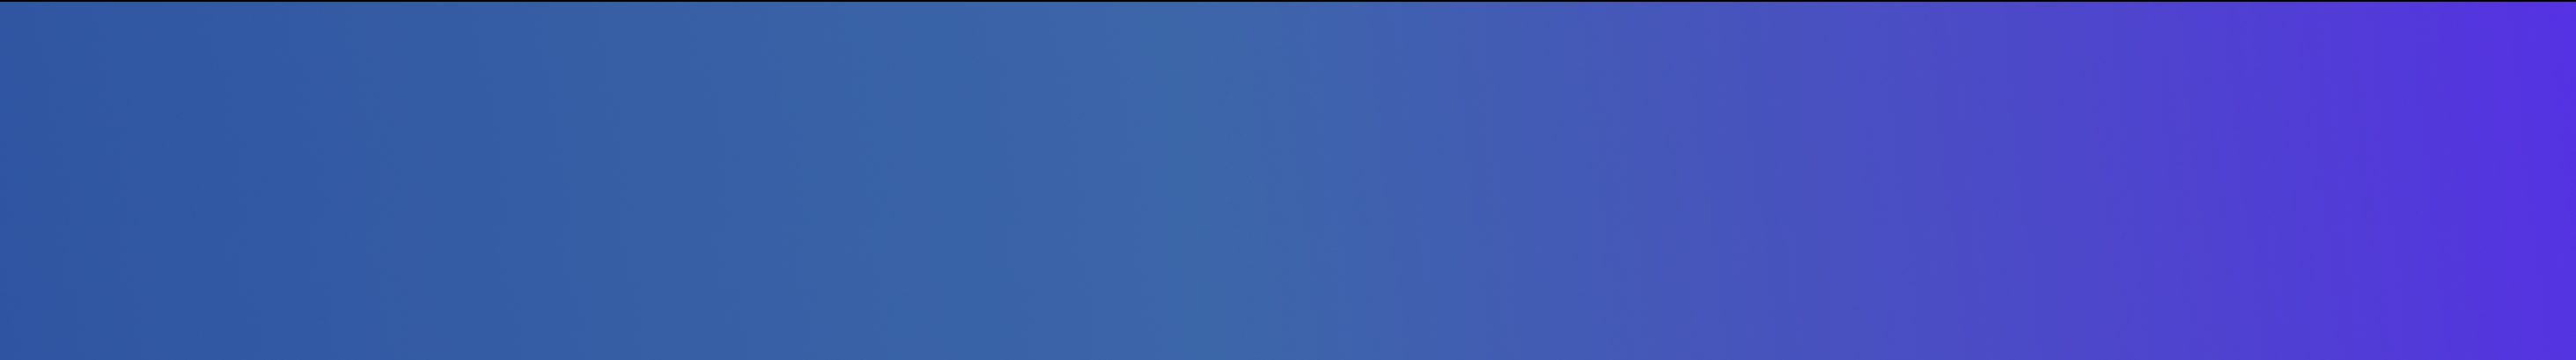 Ani Mkhitaryan's profile banner